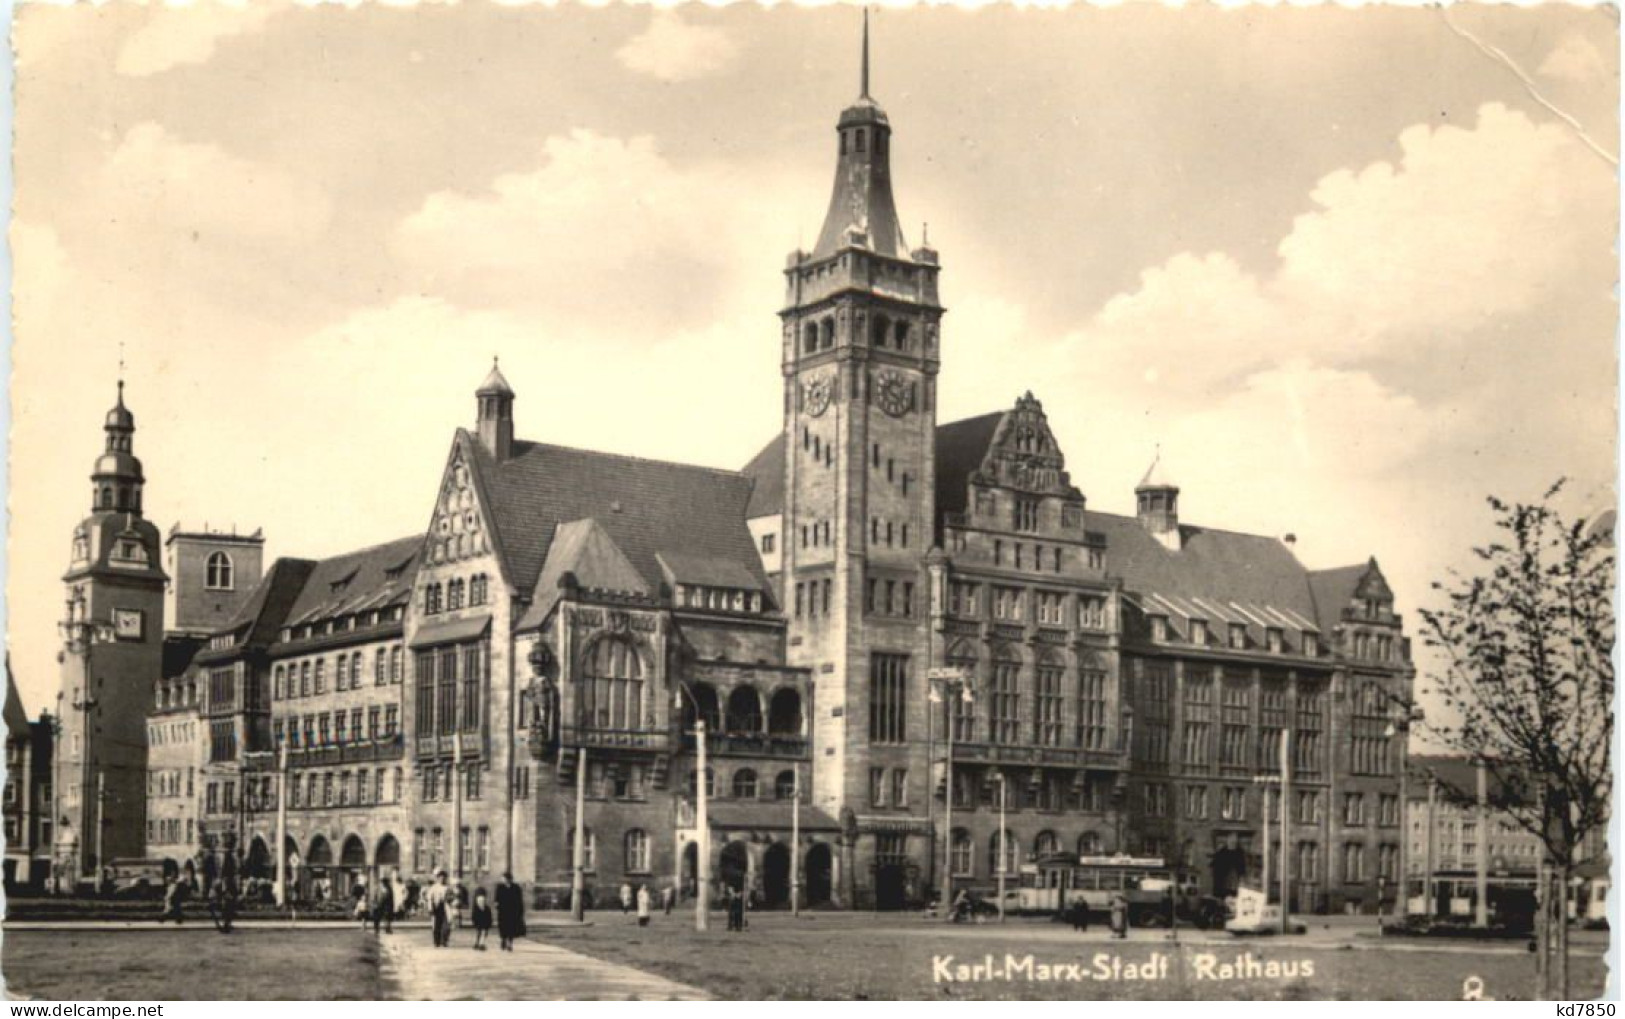 Karl-Marx-Stadt - Rathaus - Chemnitz (Karl-Marx-Stadt 1953-1990)